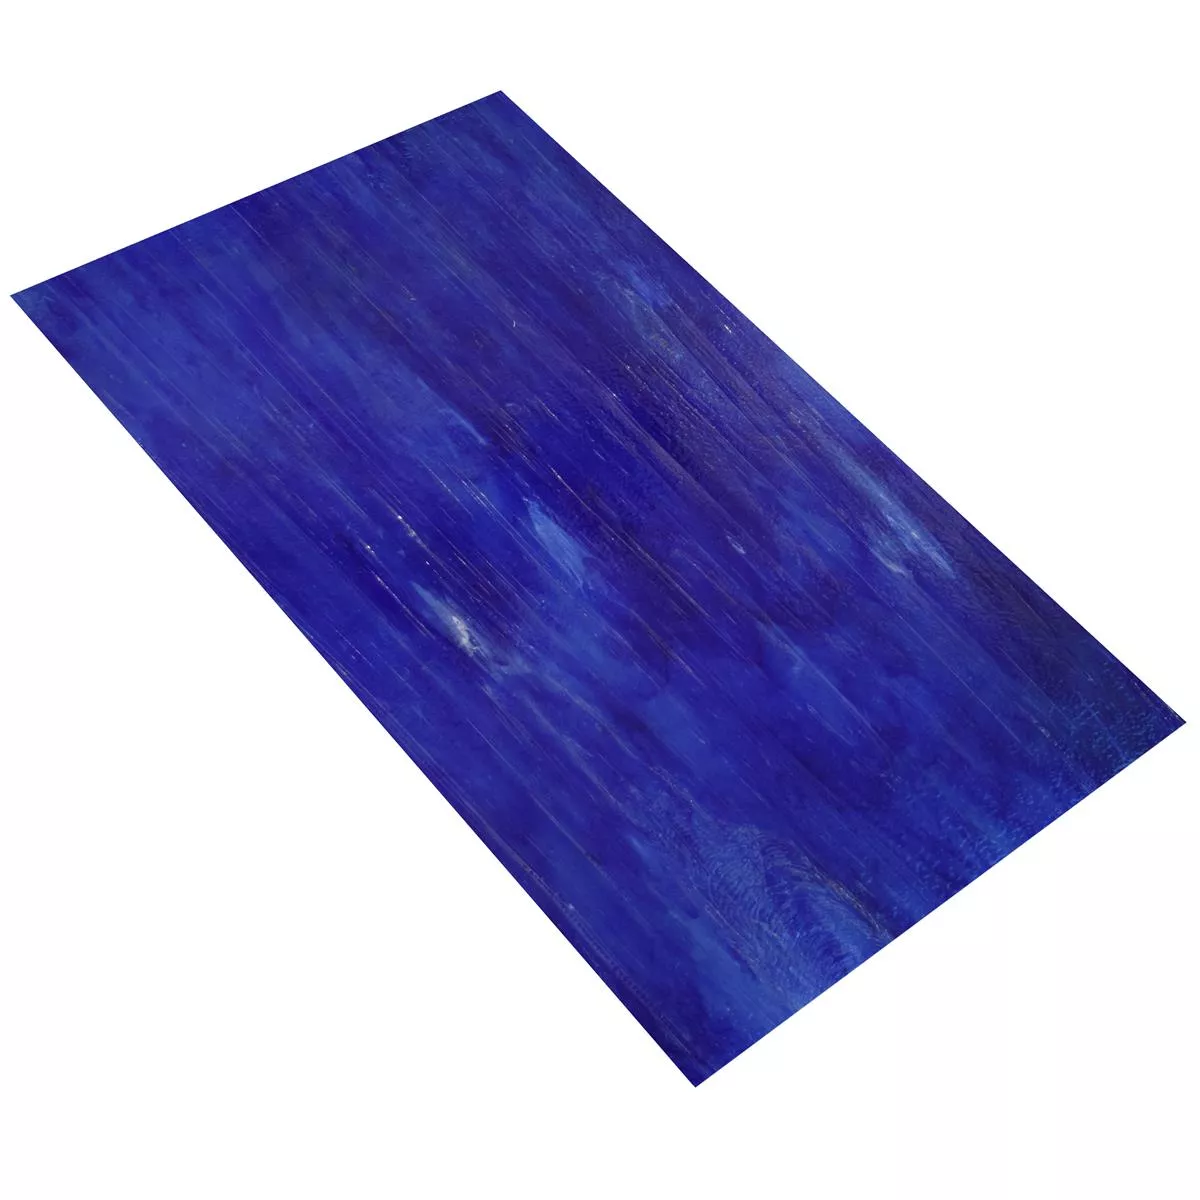 Szkło Płytki Ścienne Trend-Vi Supreme Pacific Blue 30x60cm